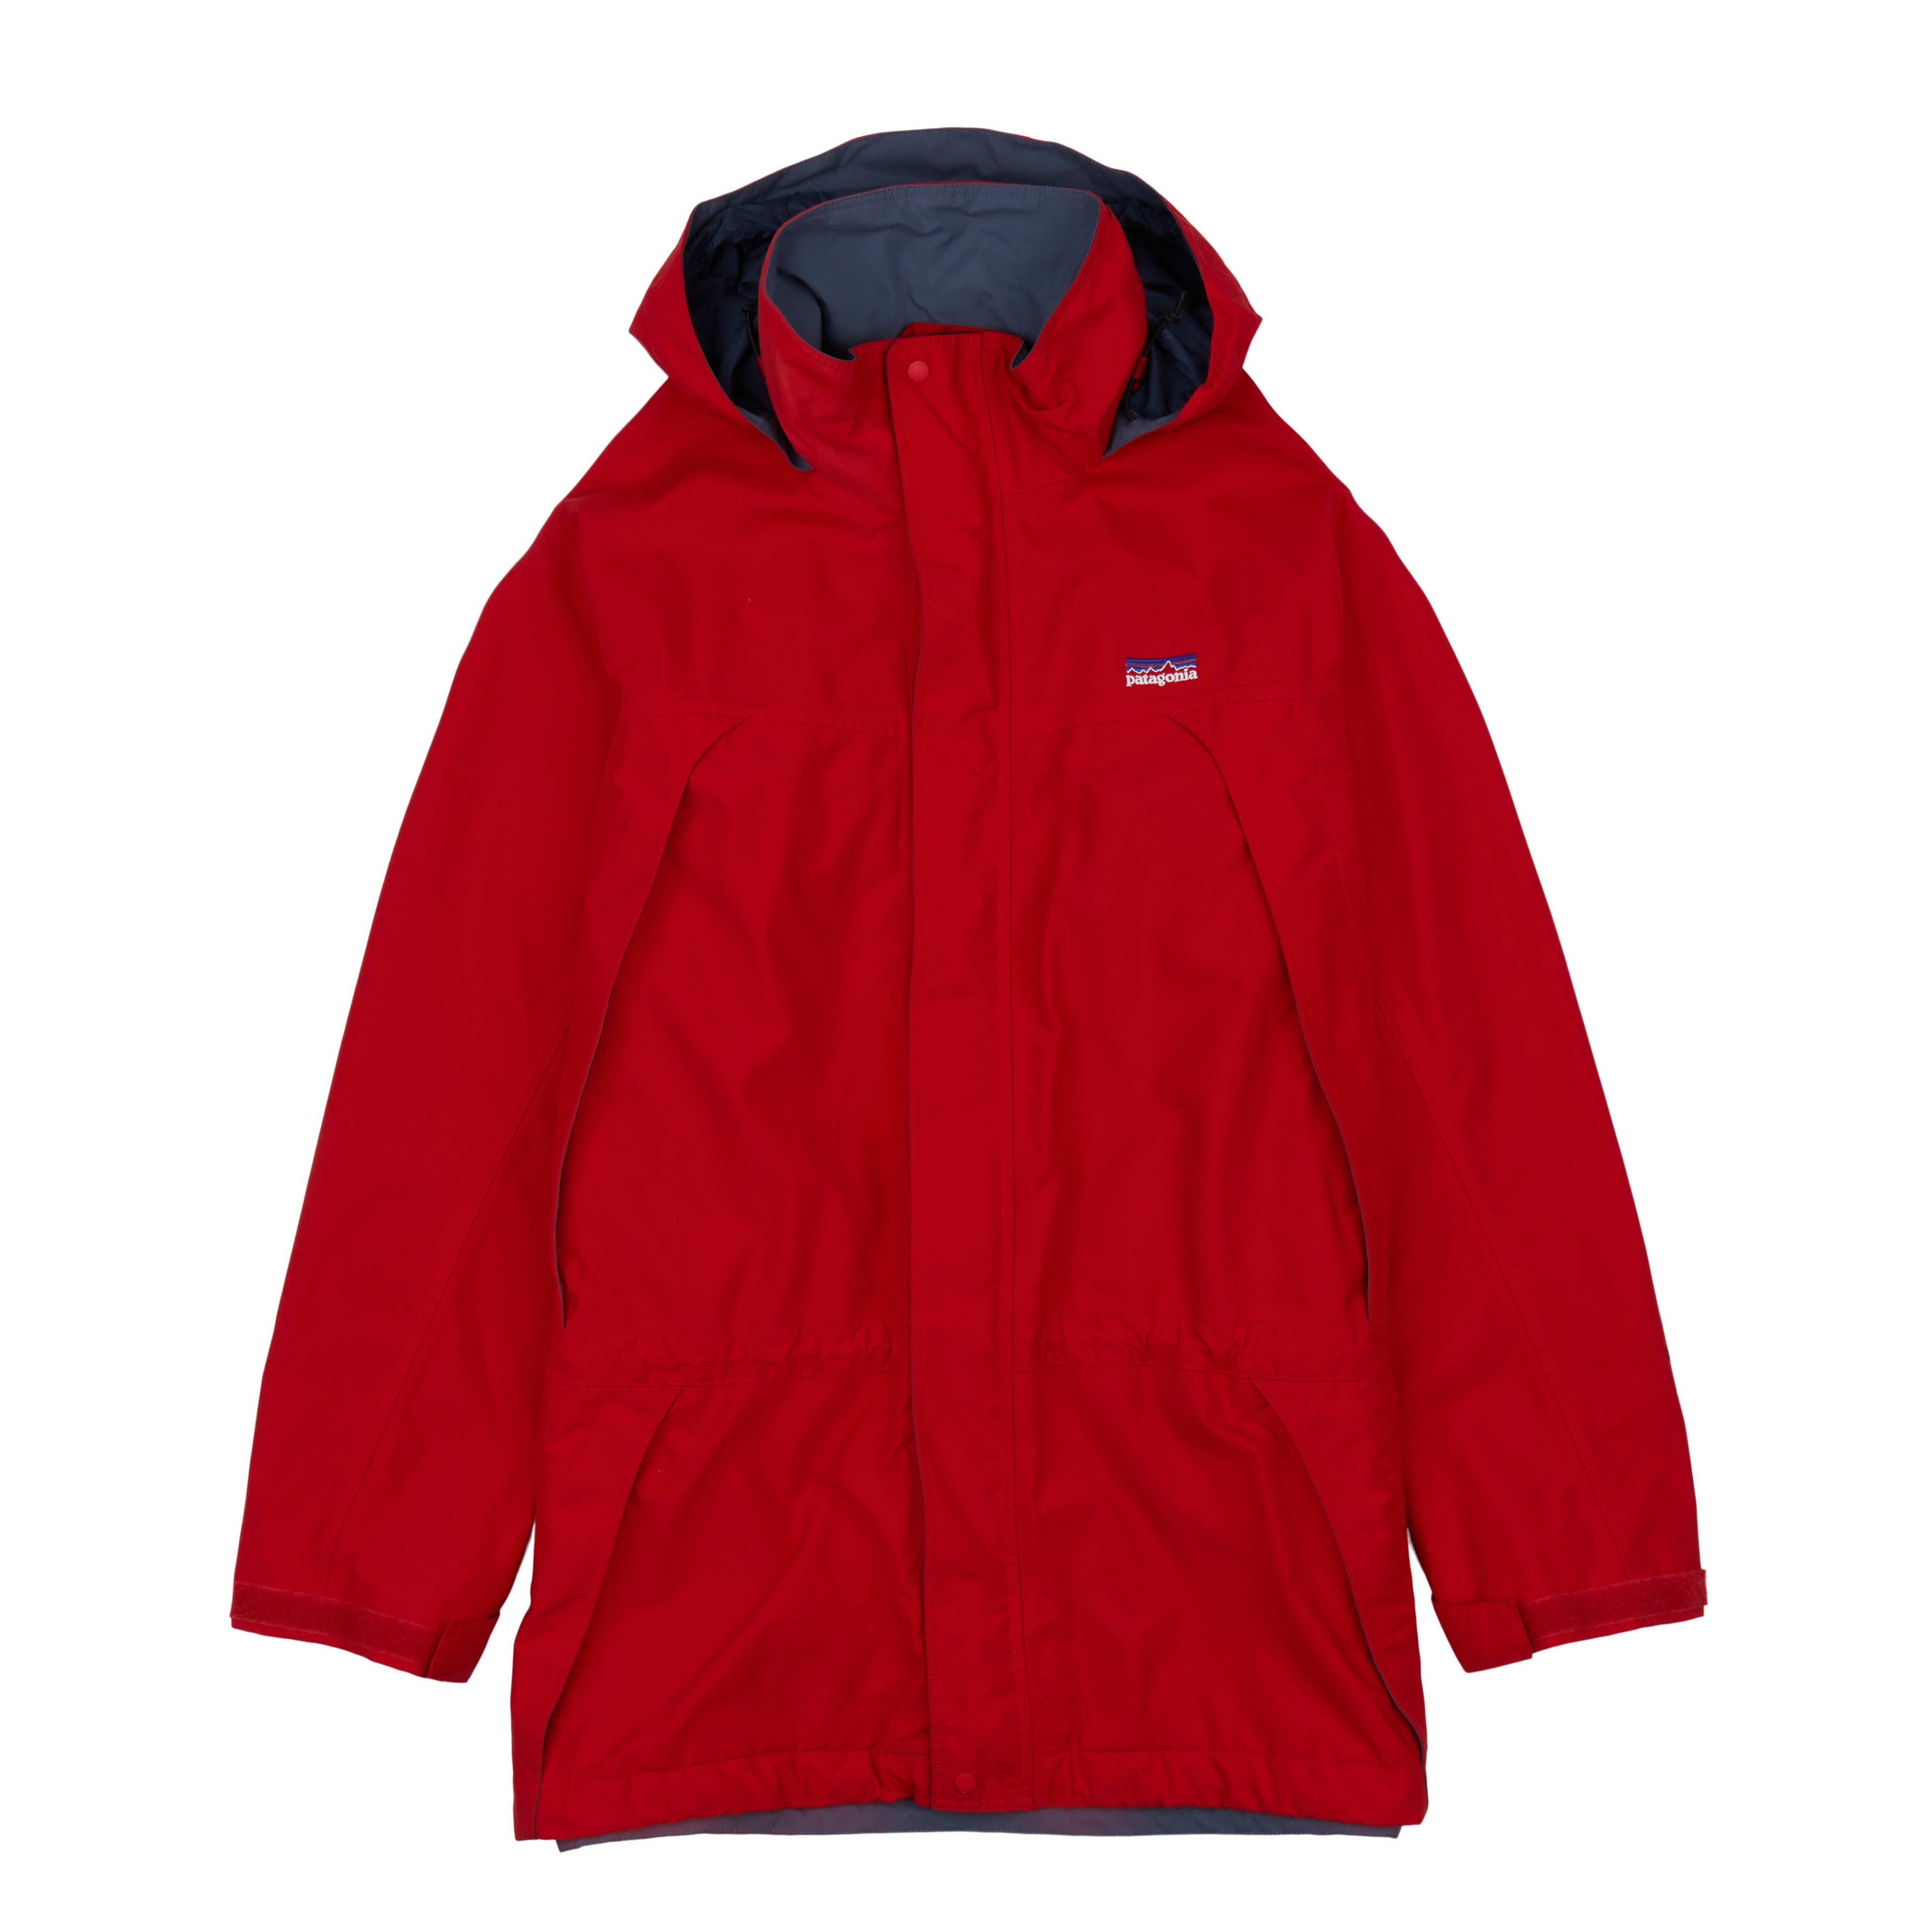 Vintage Patagonia Red Fleece Jacket